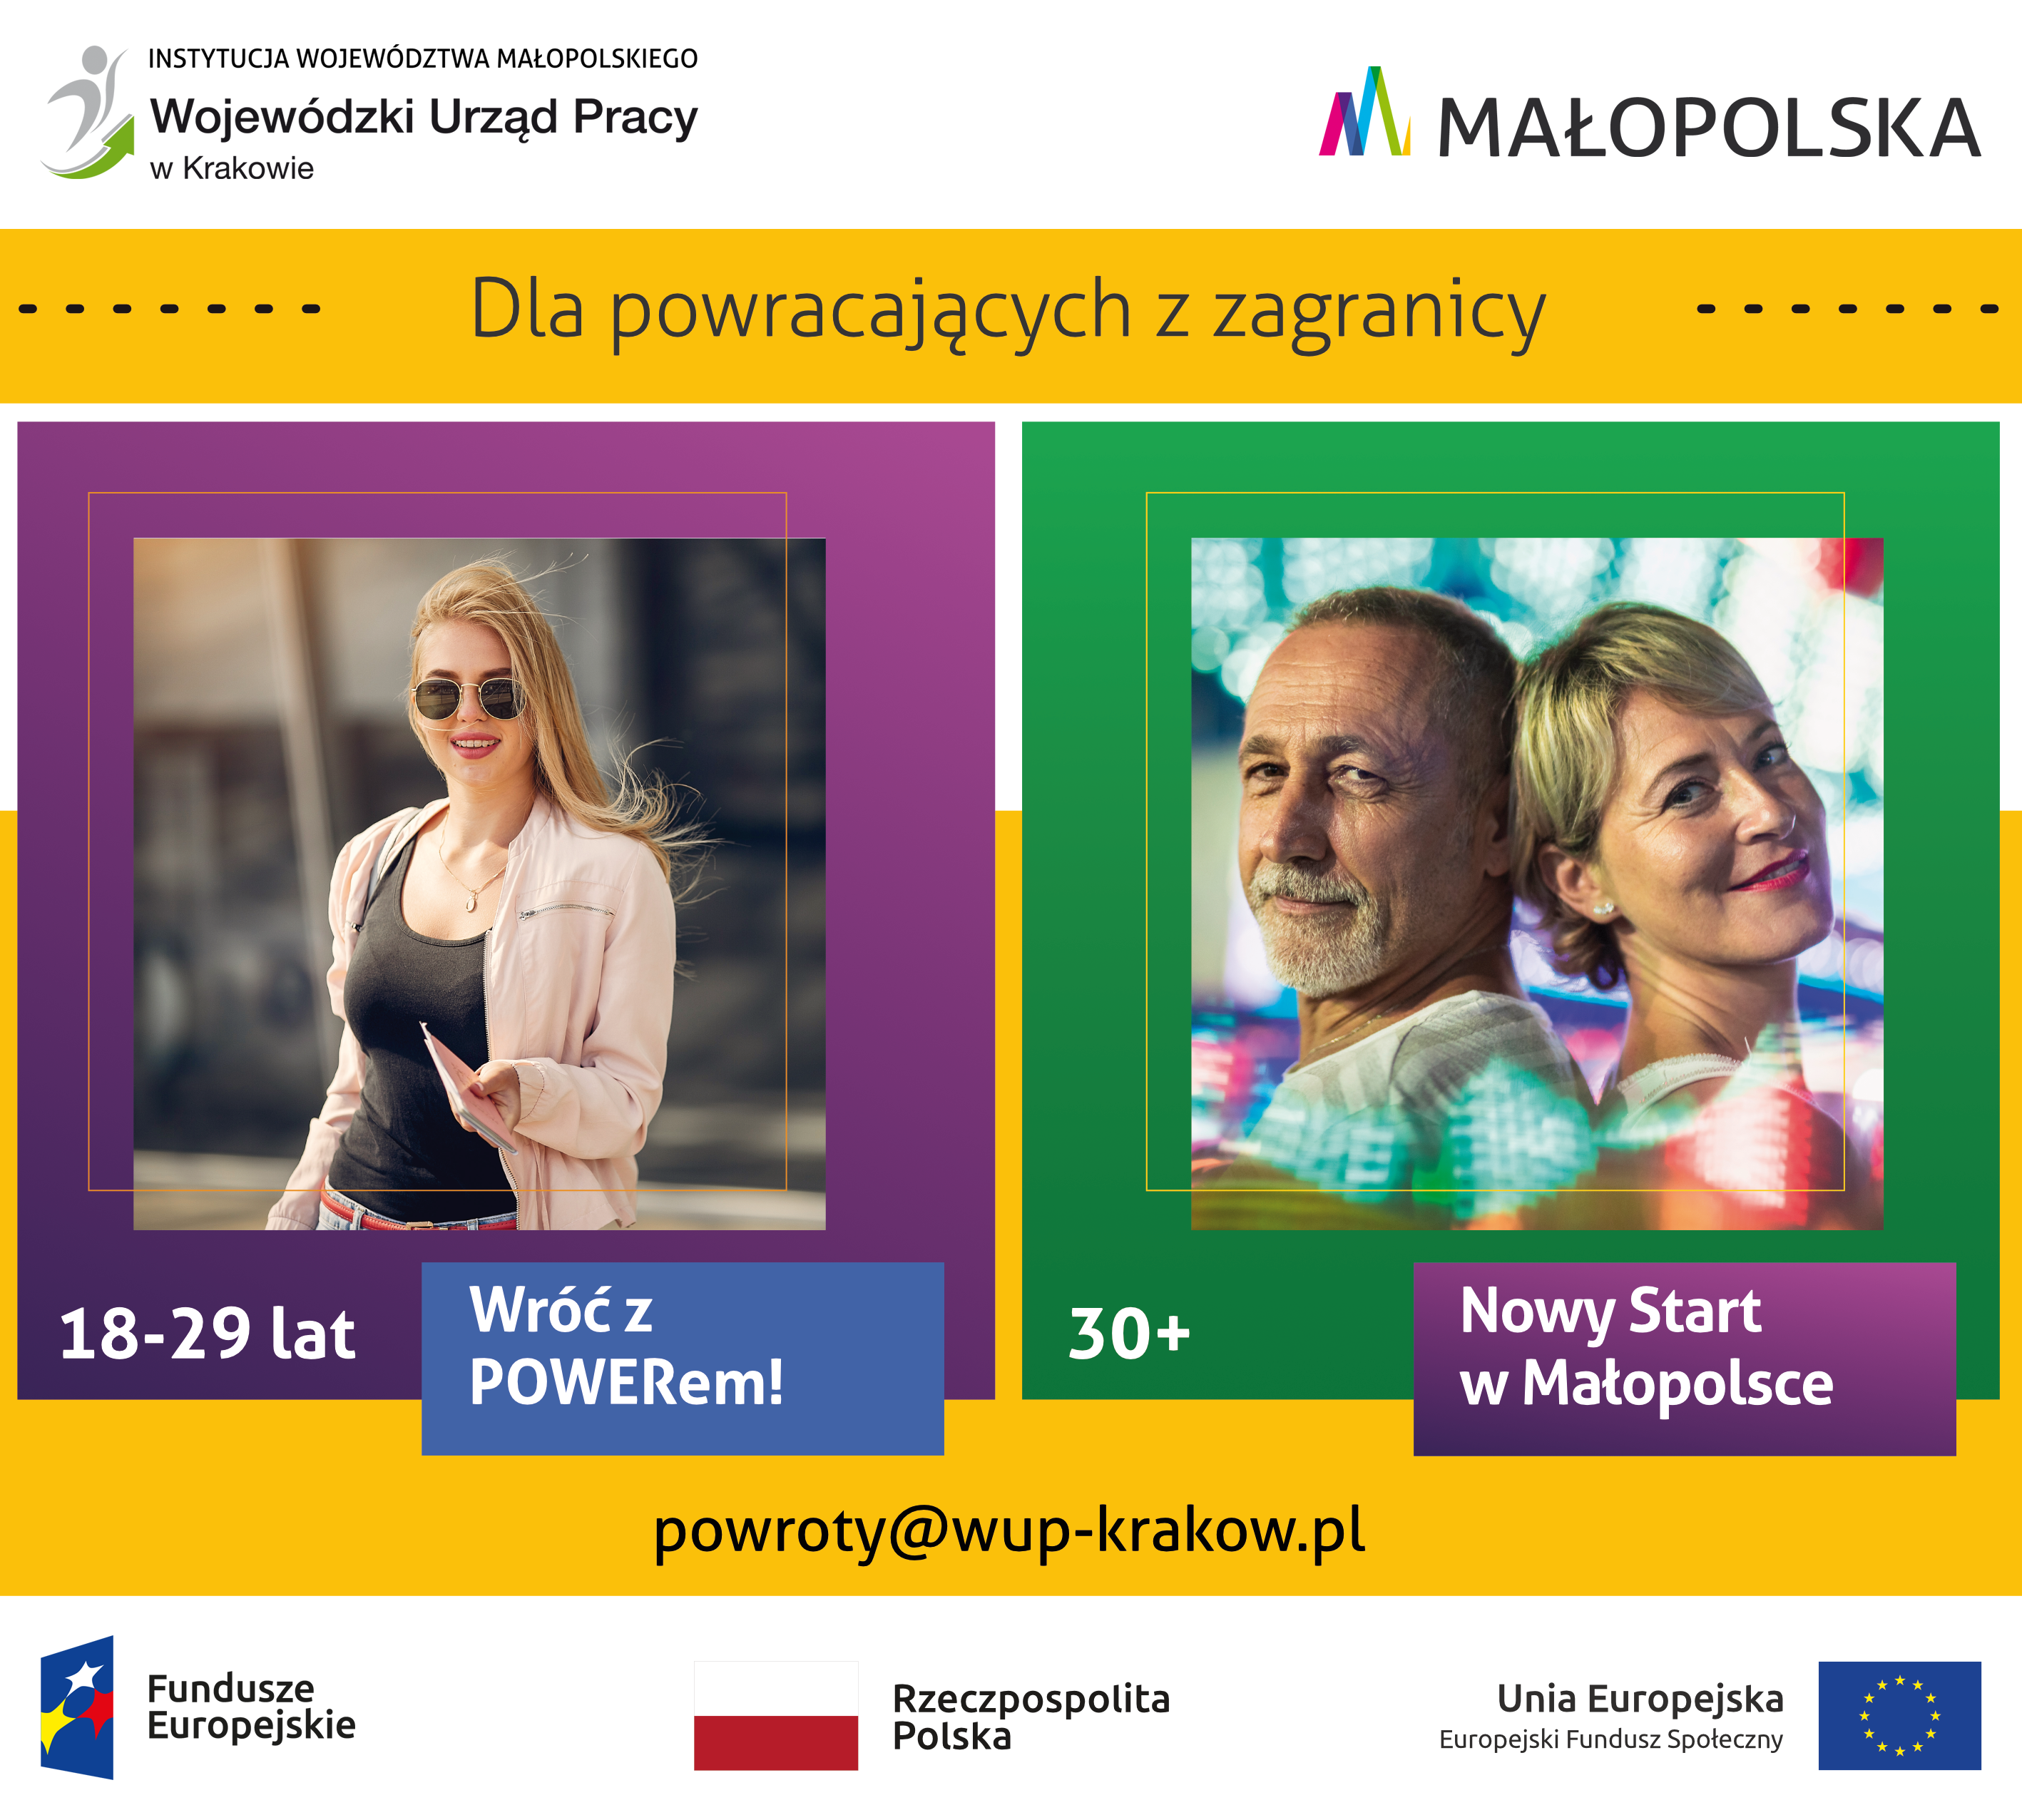 Projekt Nowy Start w Małopolsce